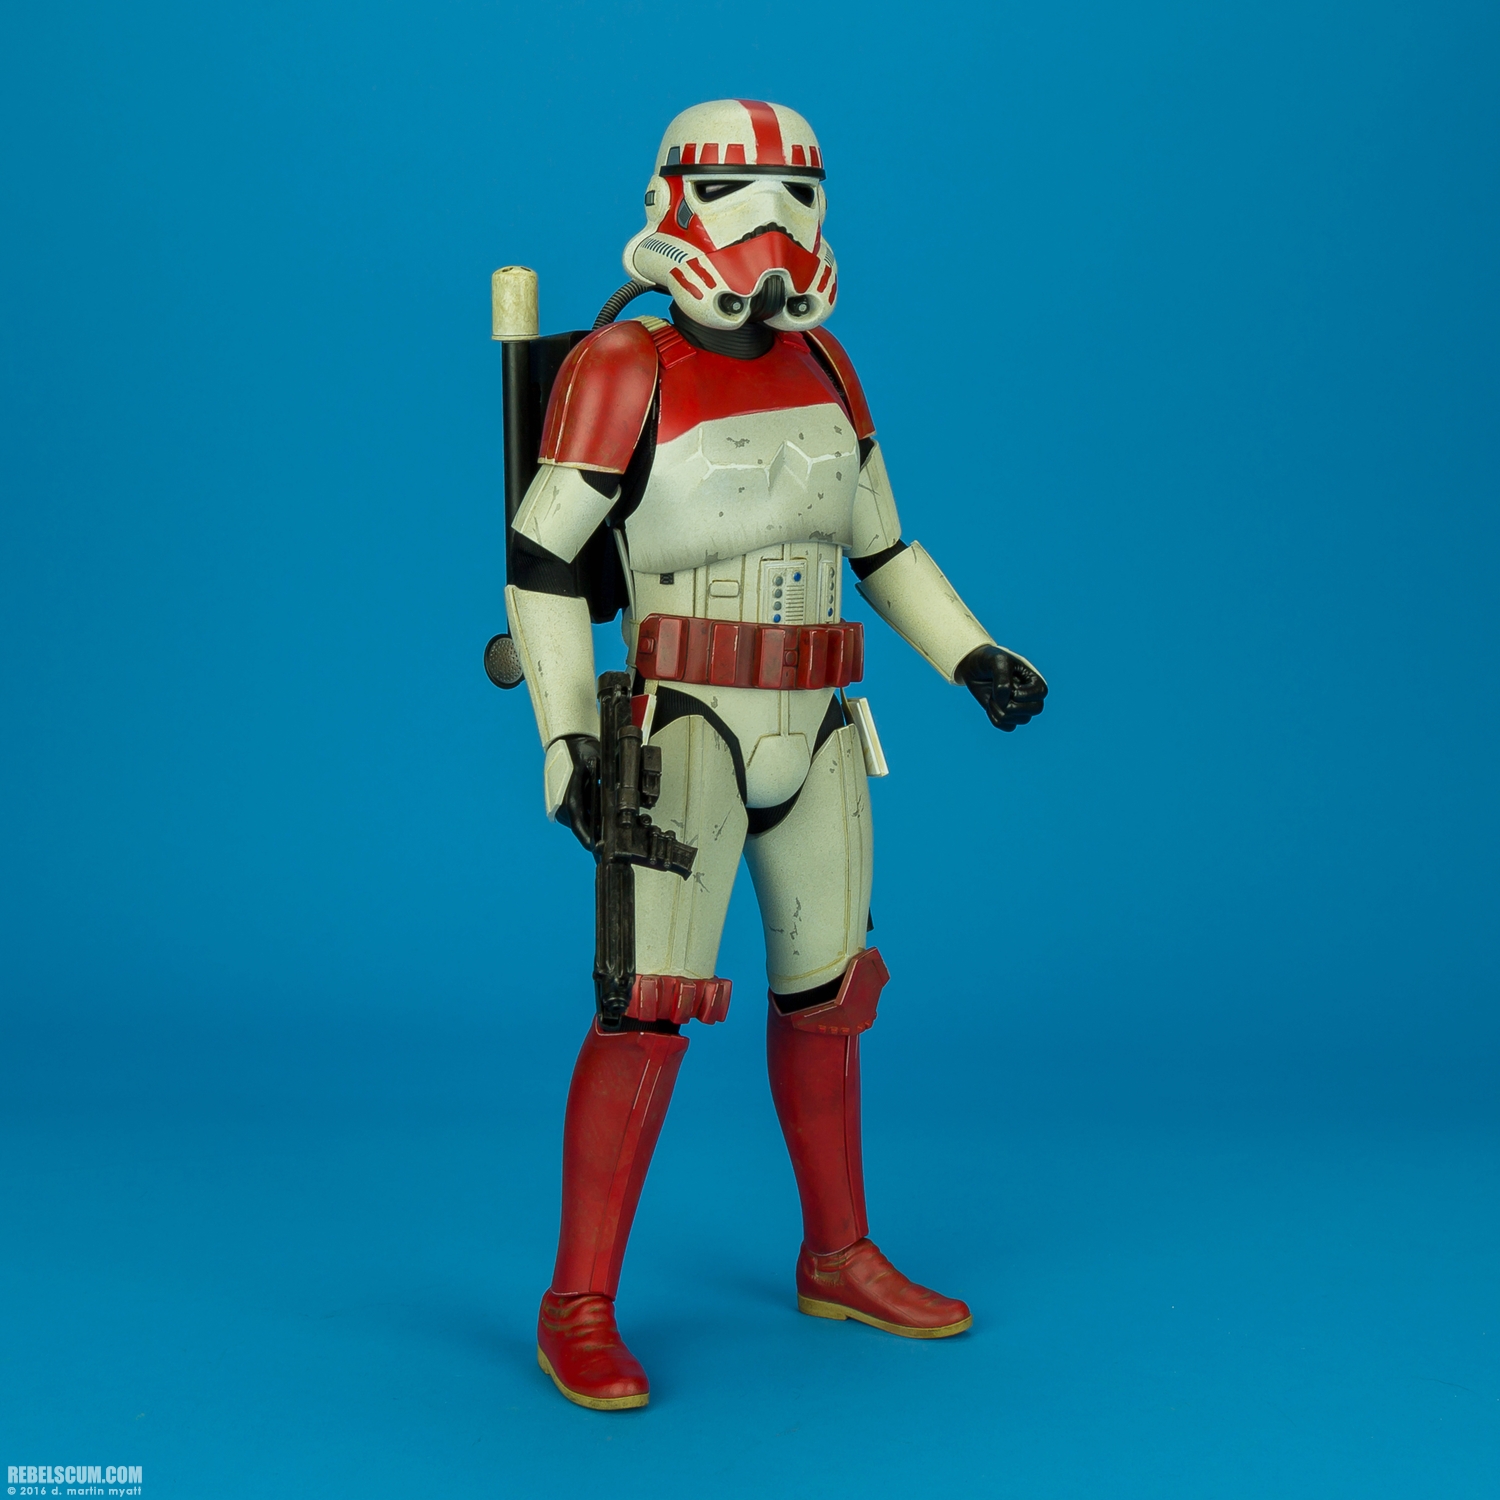 VGM020-Shock-Trooper-Star-Wars-Battlefront-Hot-Toys-019.jpg